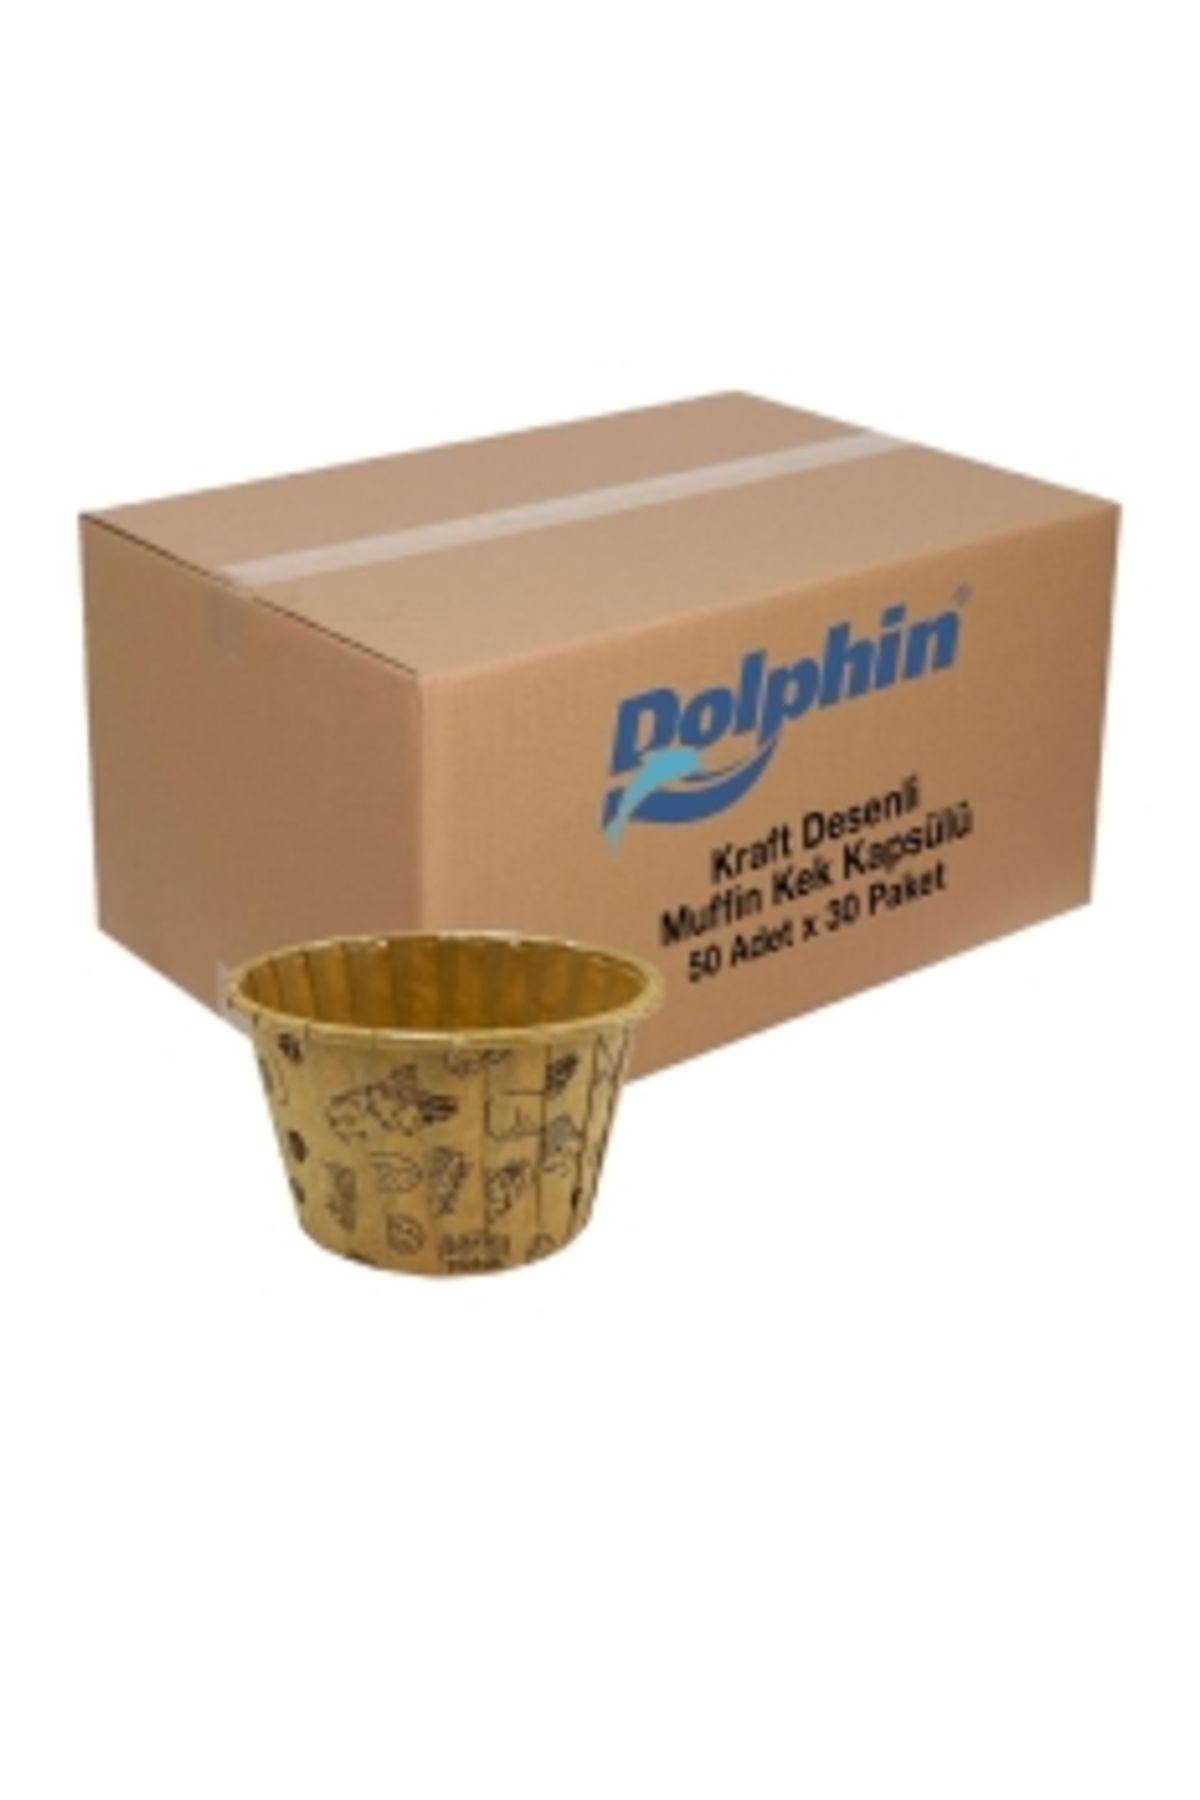 eğlencemarketi Dolphin Kağıt Muffin Kek Kapsülü Shrinkli Kraft Desenli 50 Adet